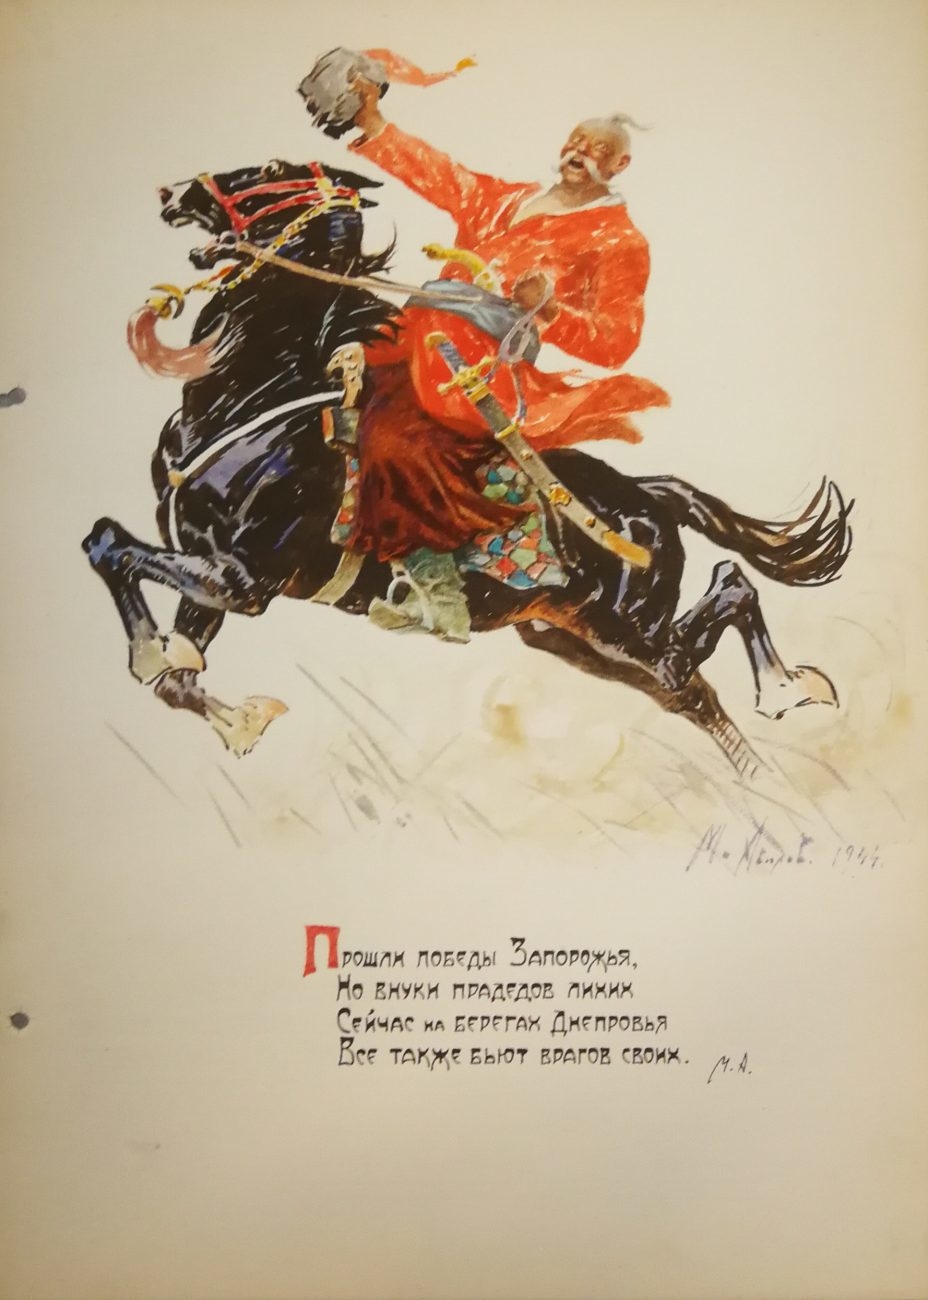 Авилов М.И. Оригинал иллюстрации «Прошли победы Запорожья…» 1944.